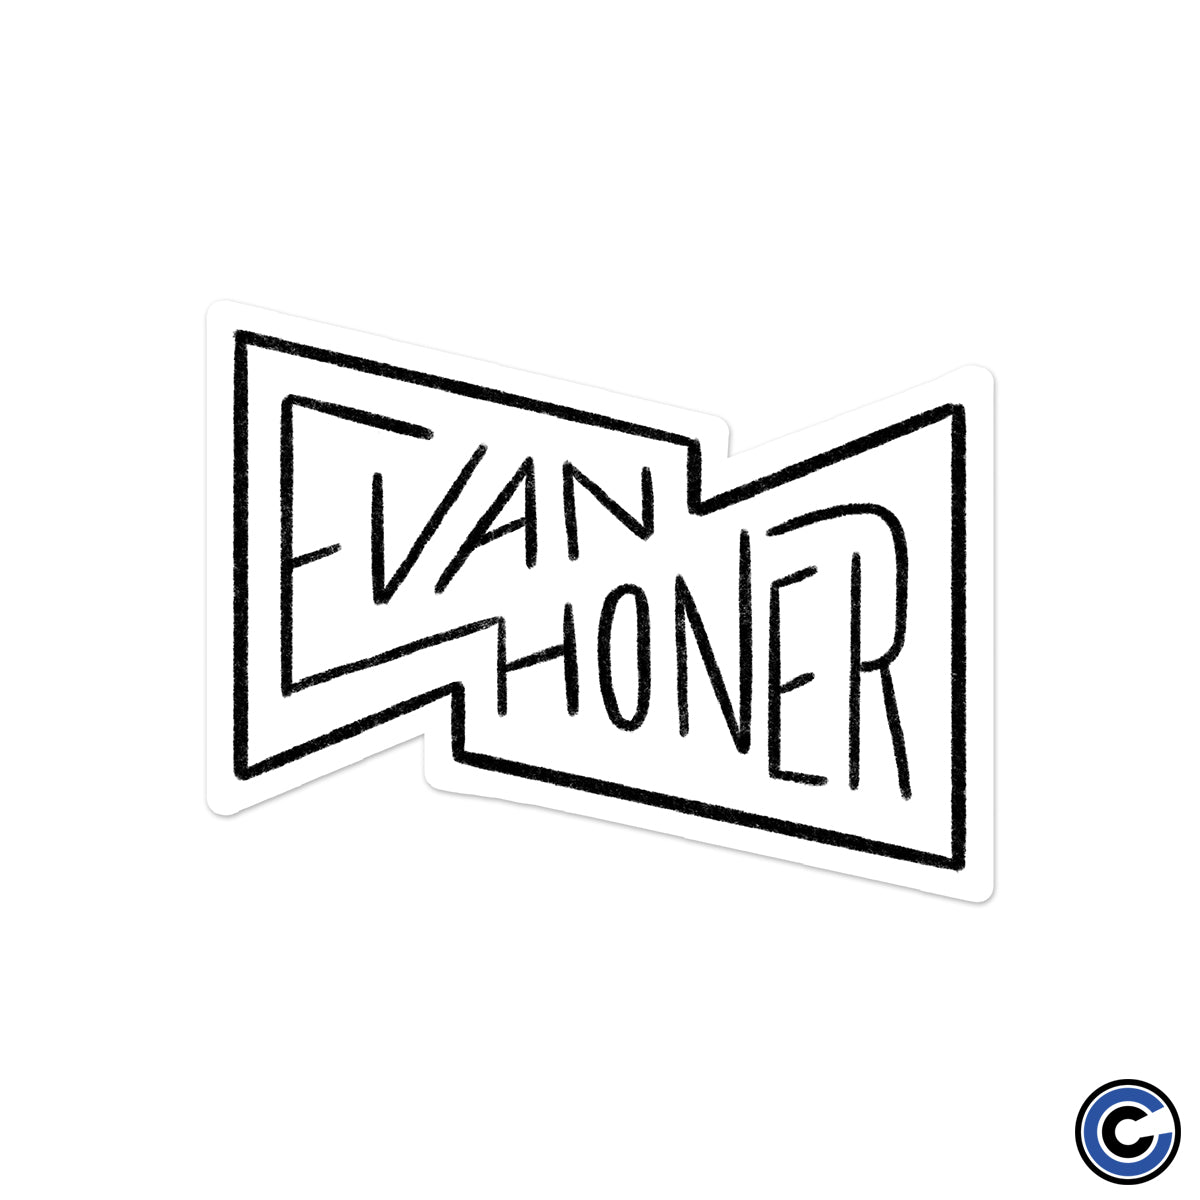 Evan Honer "Name" Sticker